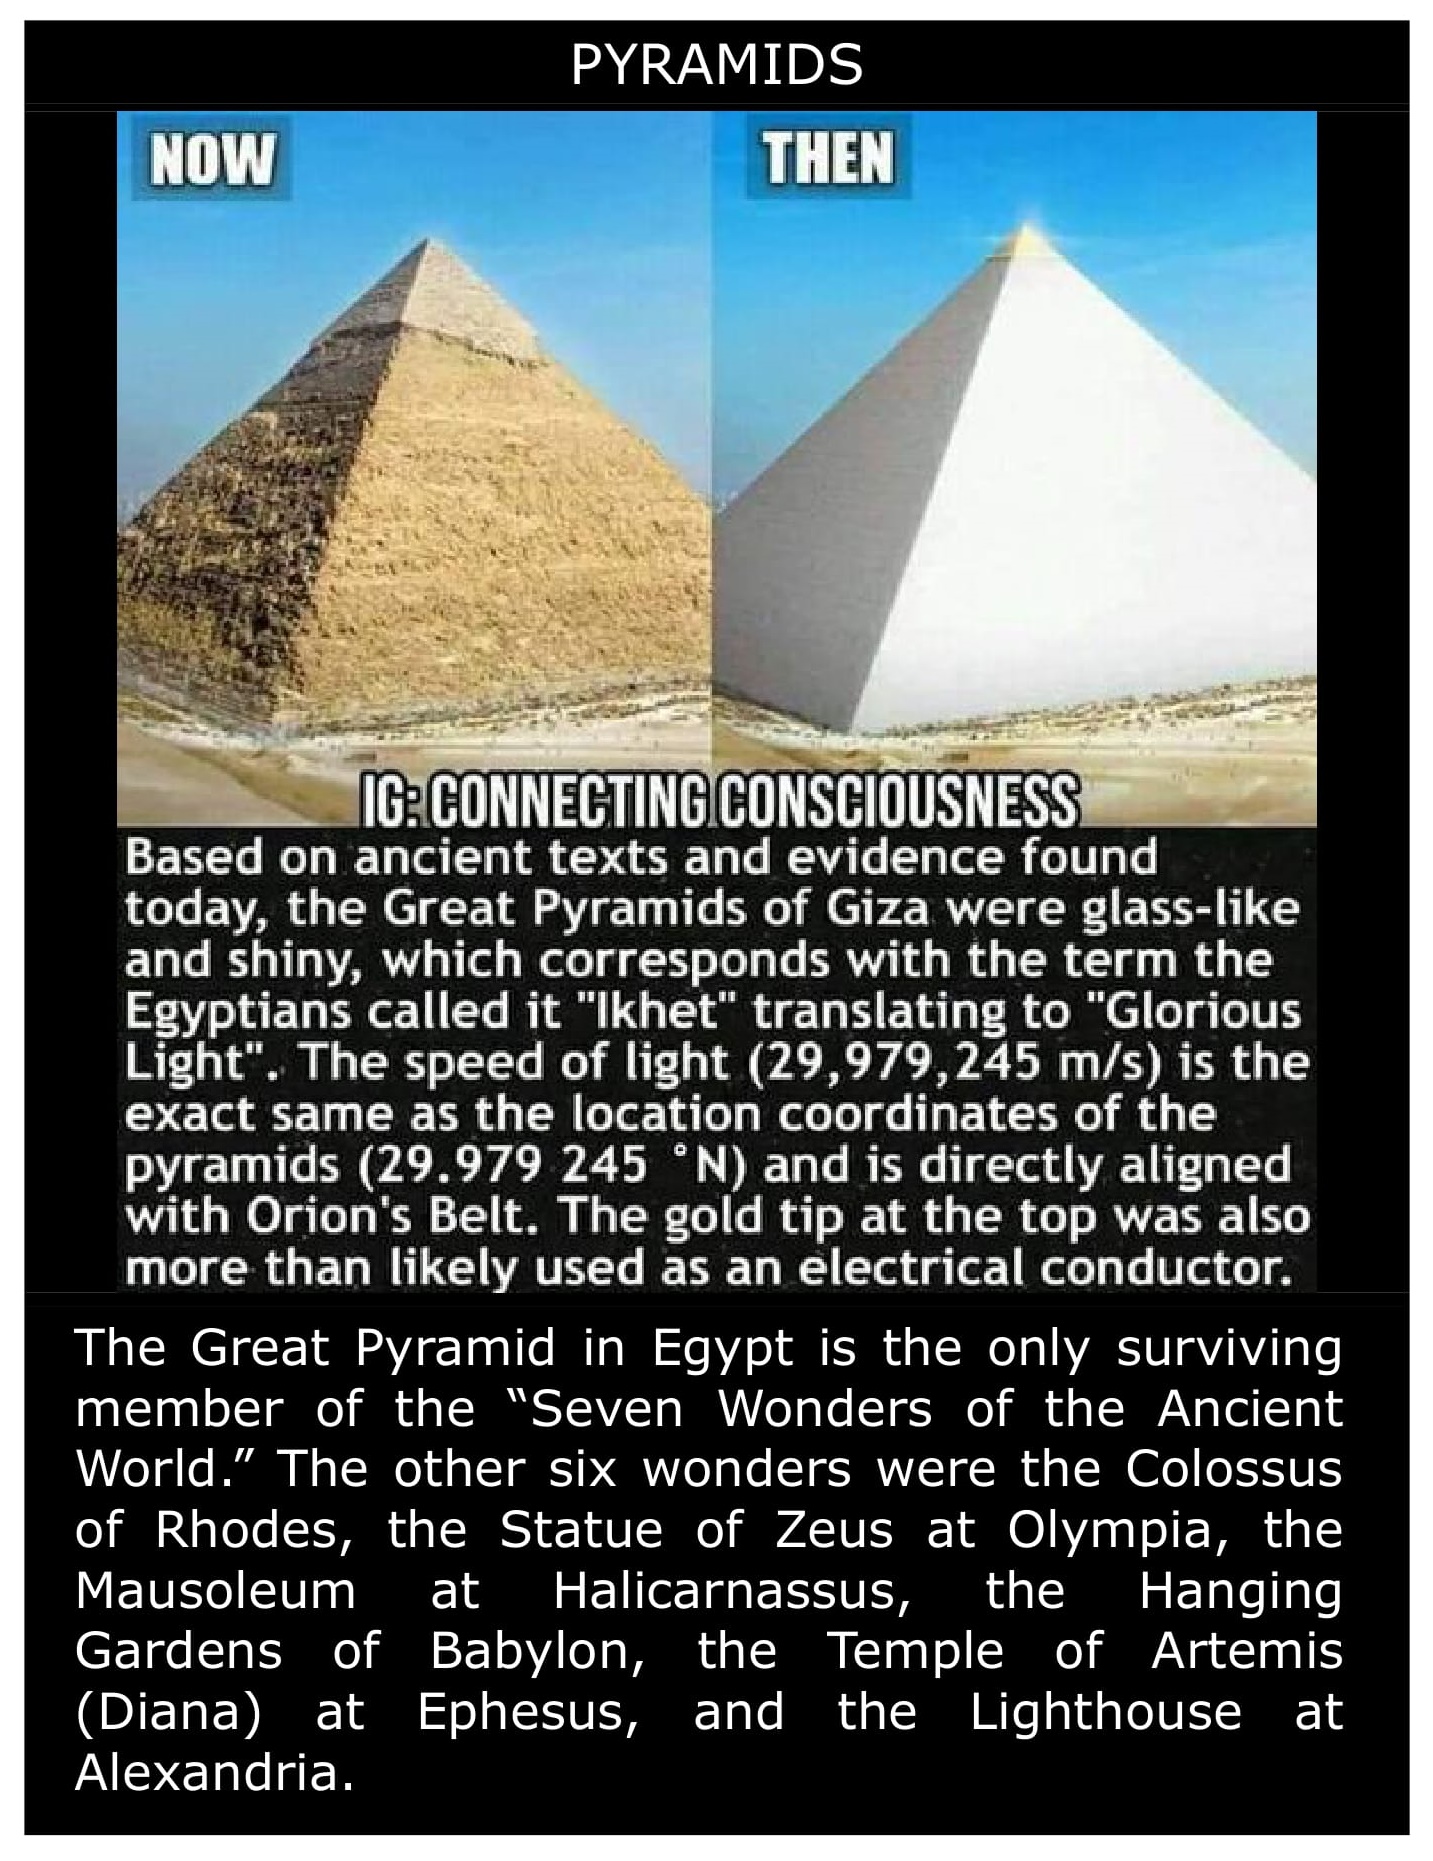 Pyramids - Connecting Consciousness